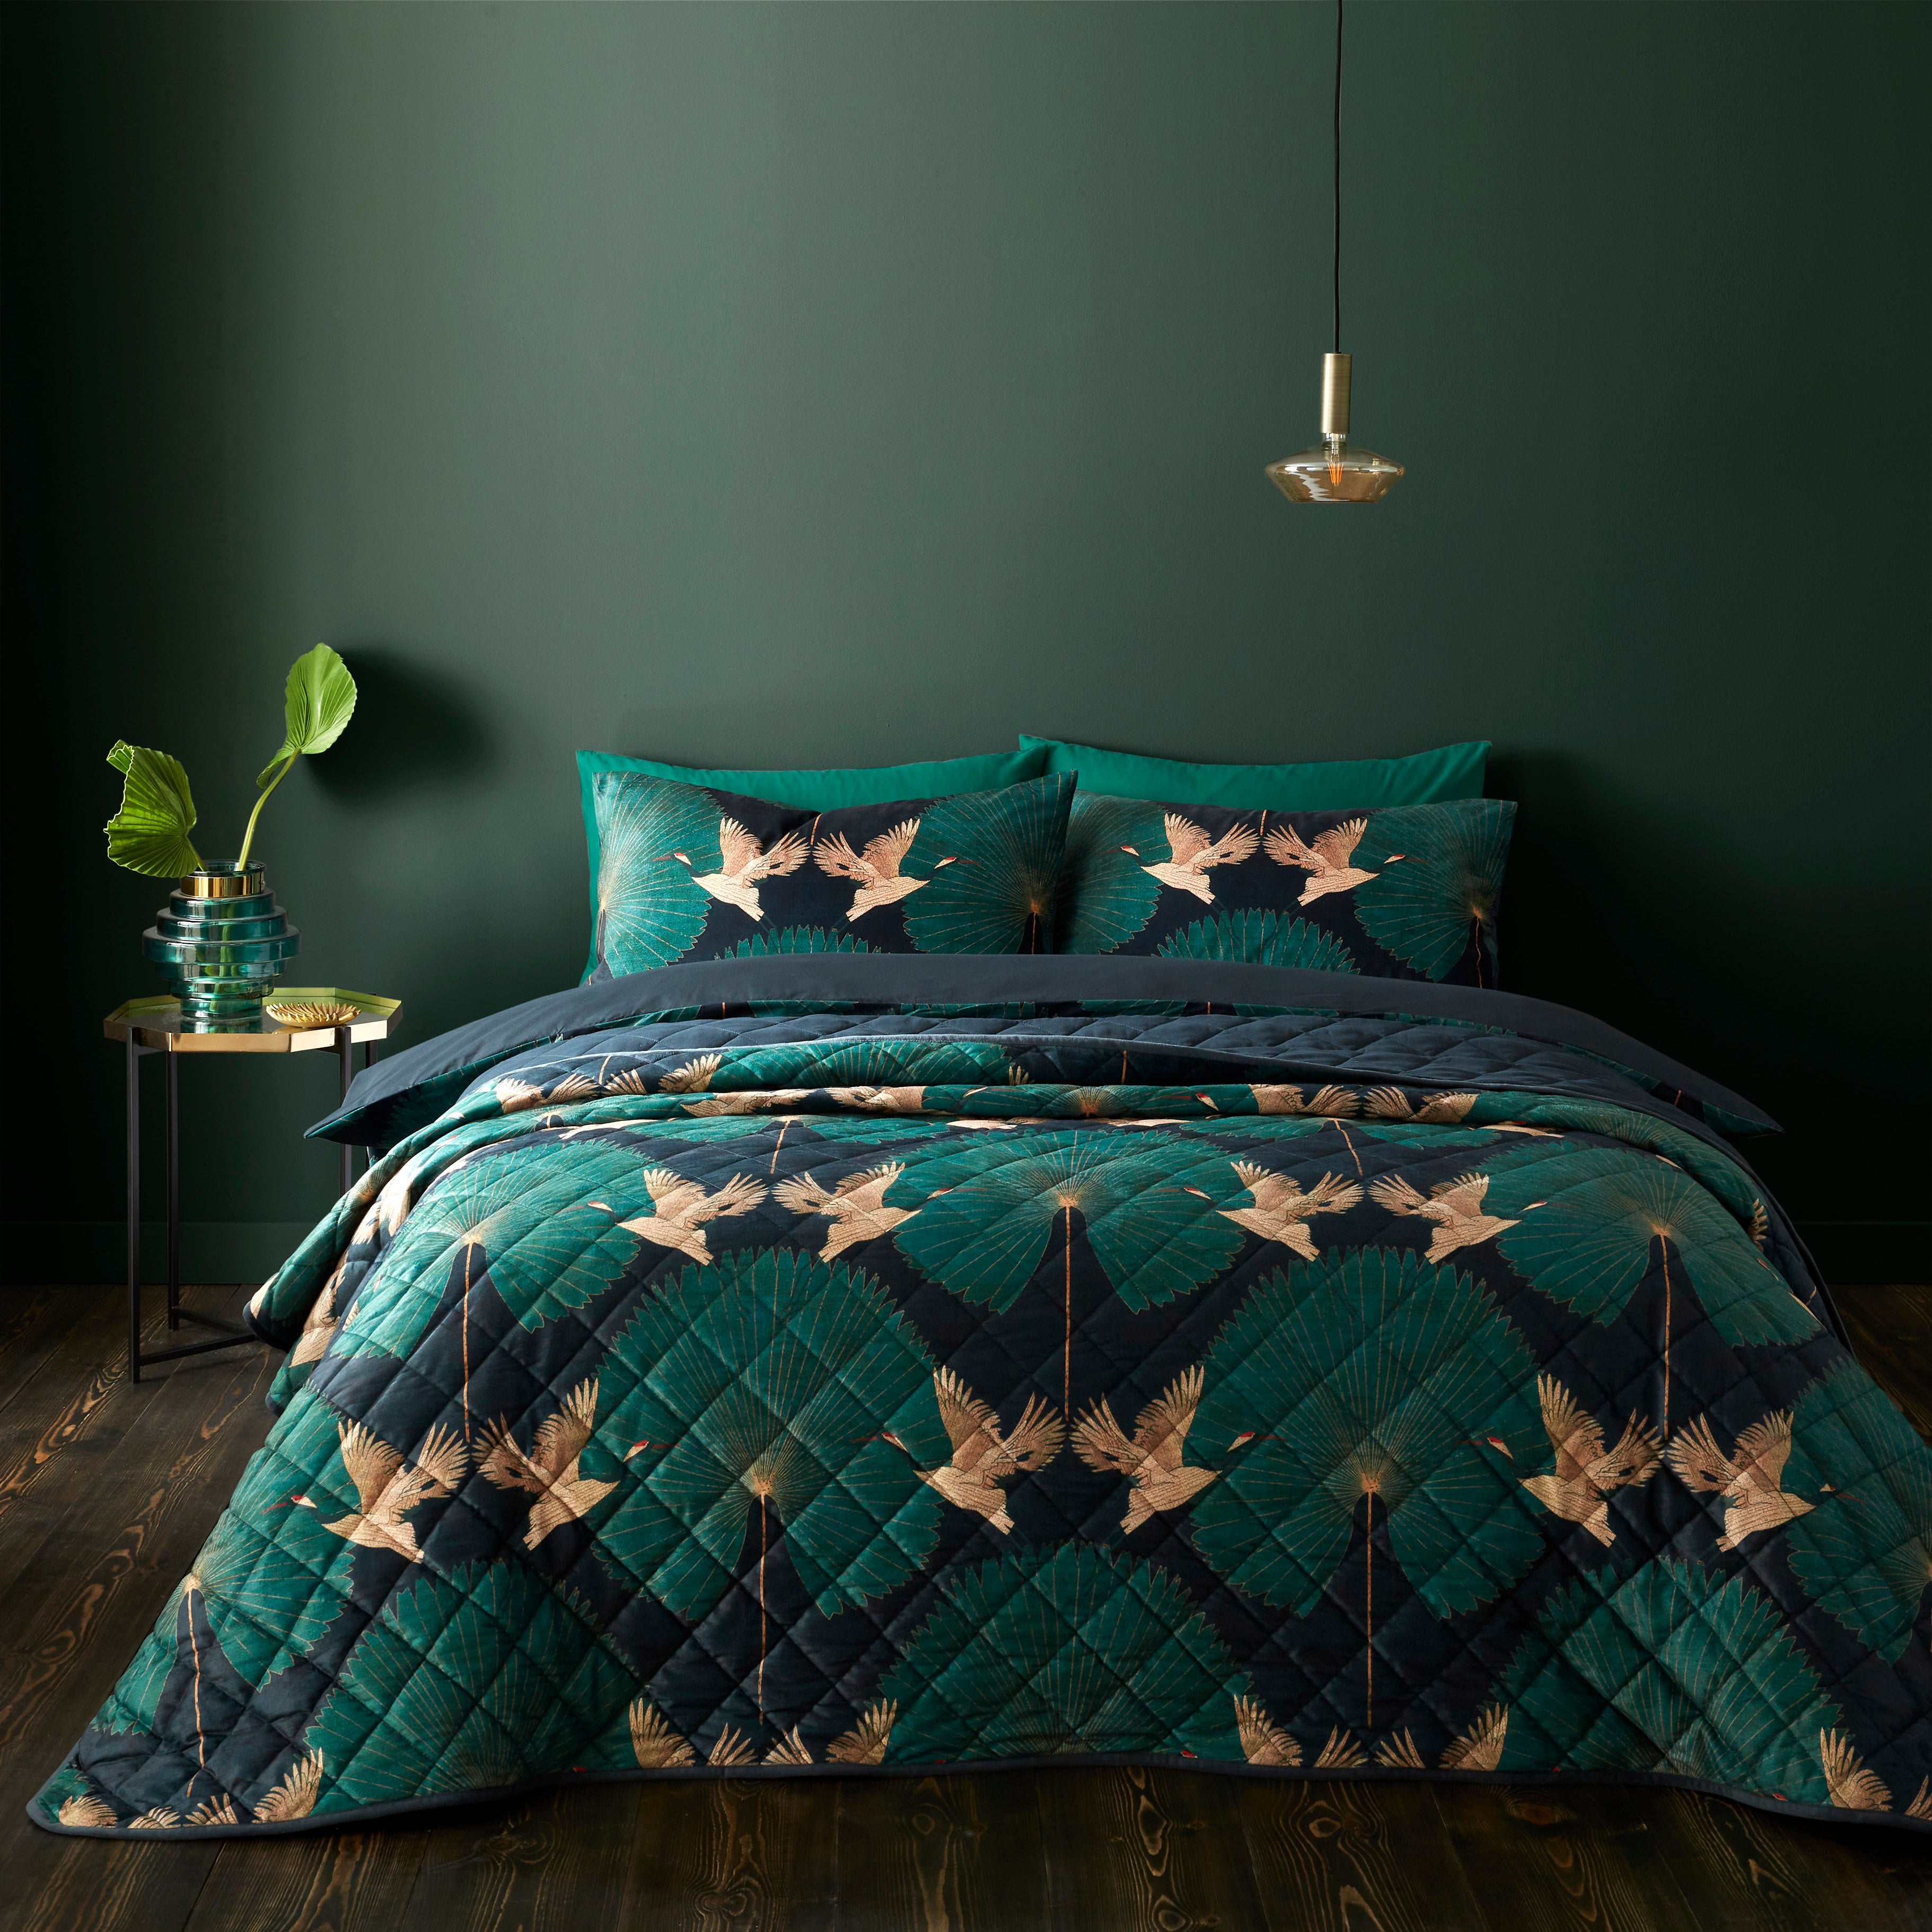 Luxe Cranes Emerald Bedspread Greennavy Bluebrown